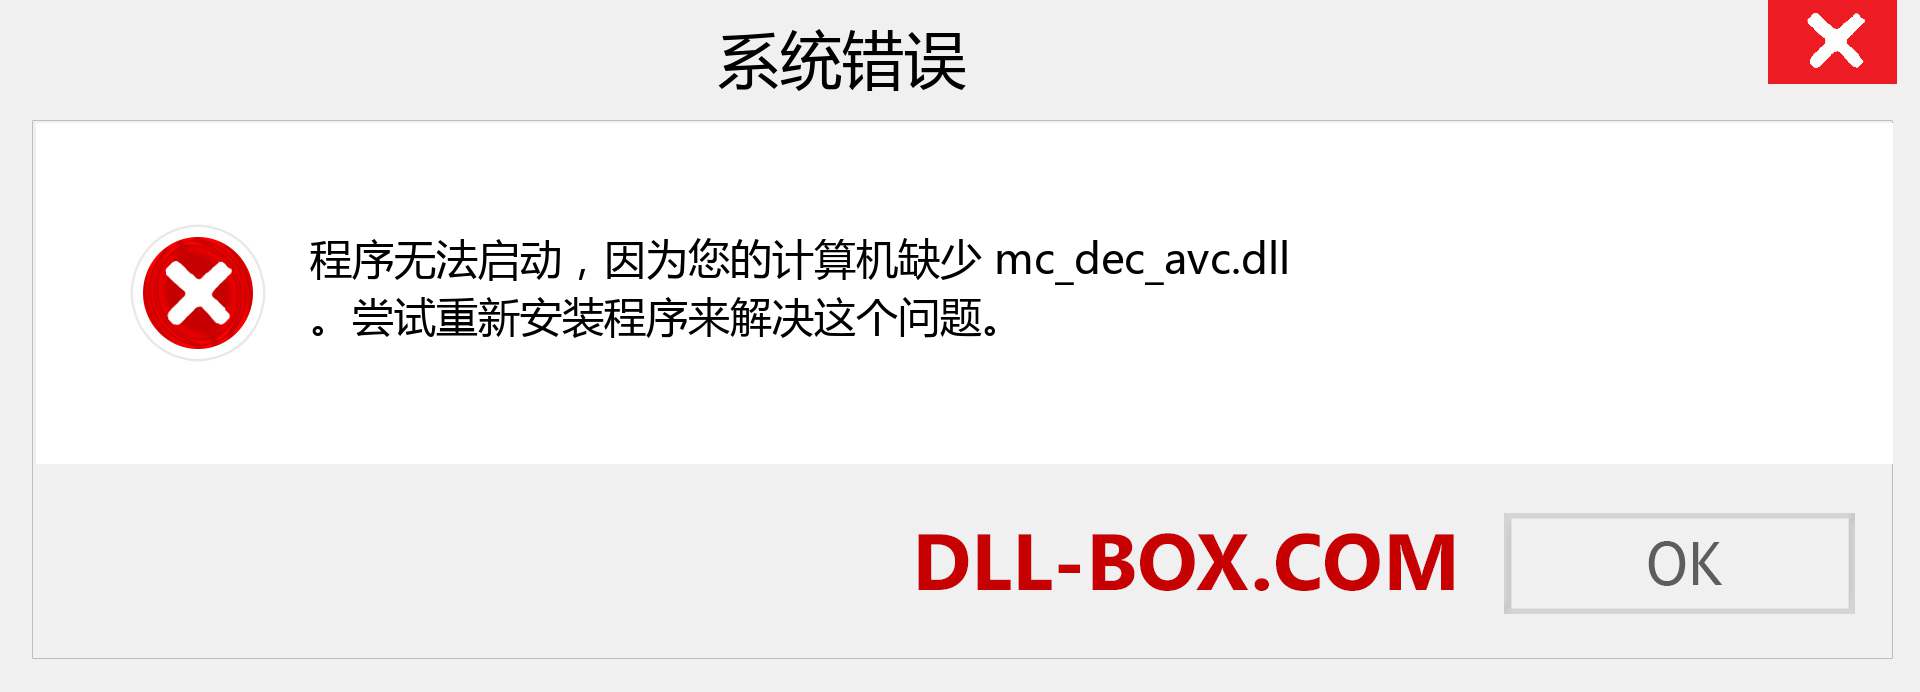 mc_dec_avc.dll 文件丢失？。 适用于 Windows 7、8、10 的下载 - 修复 Windows、照片、图像上的 mc_dec_avc dll 丢失错误